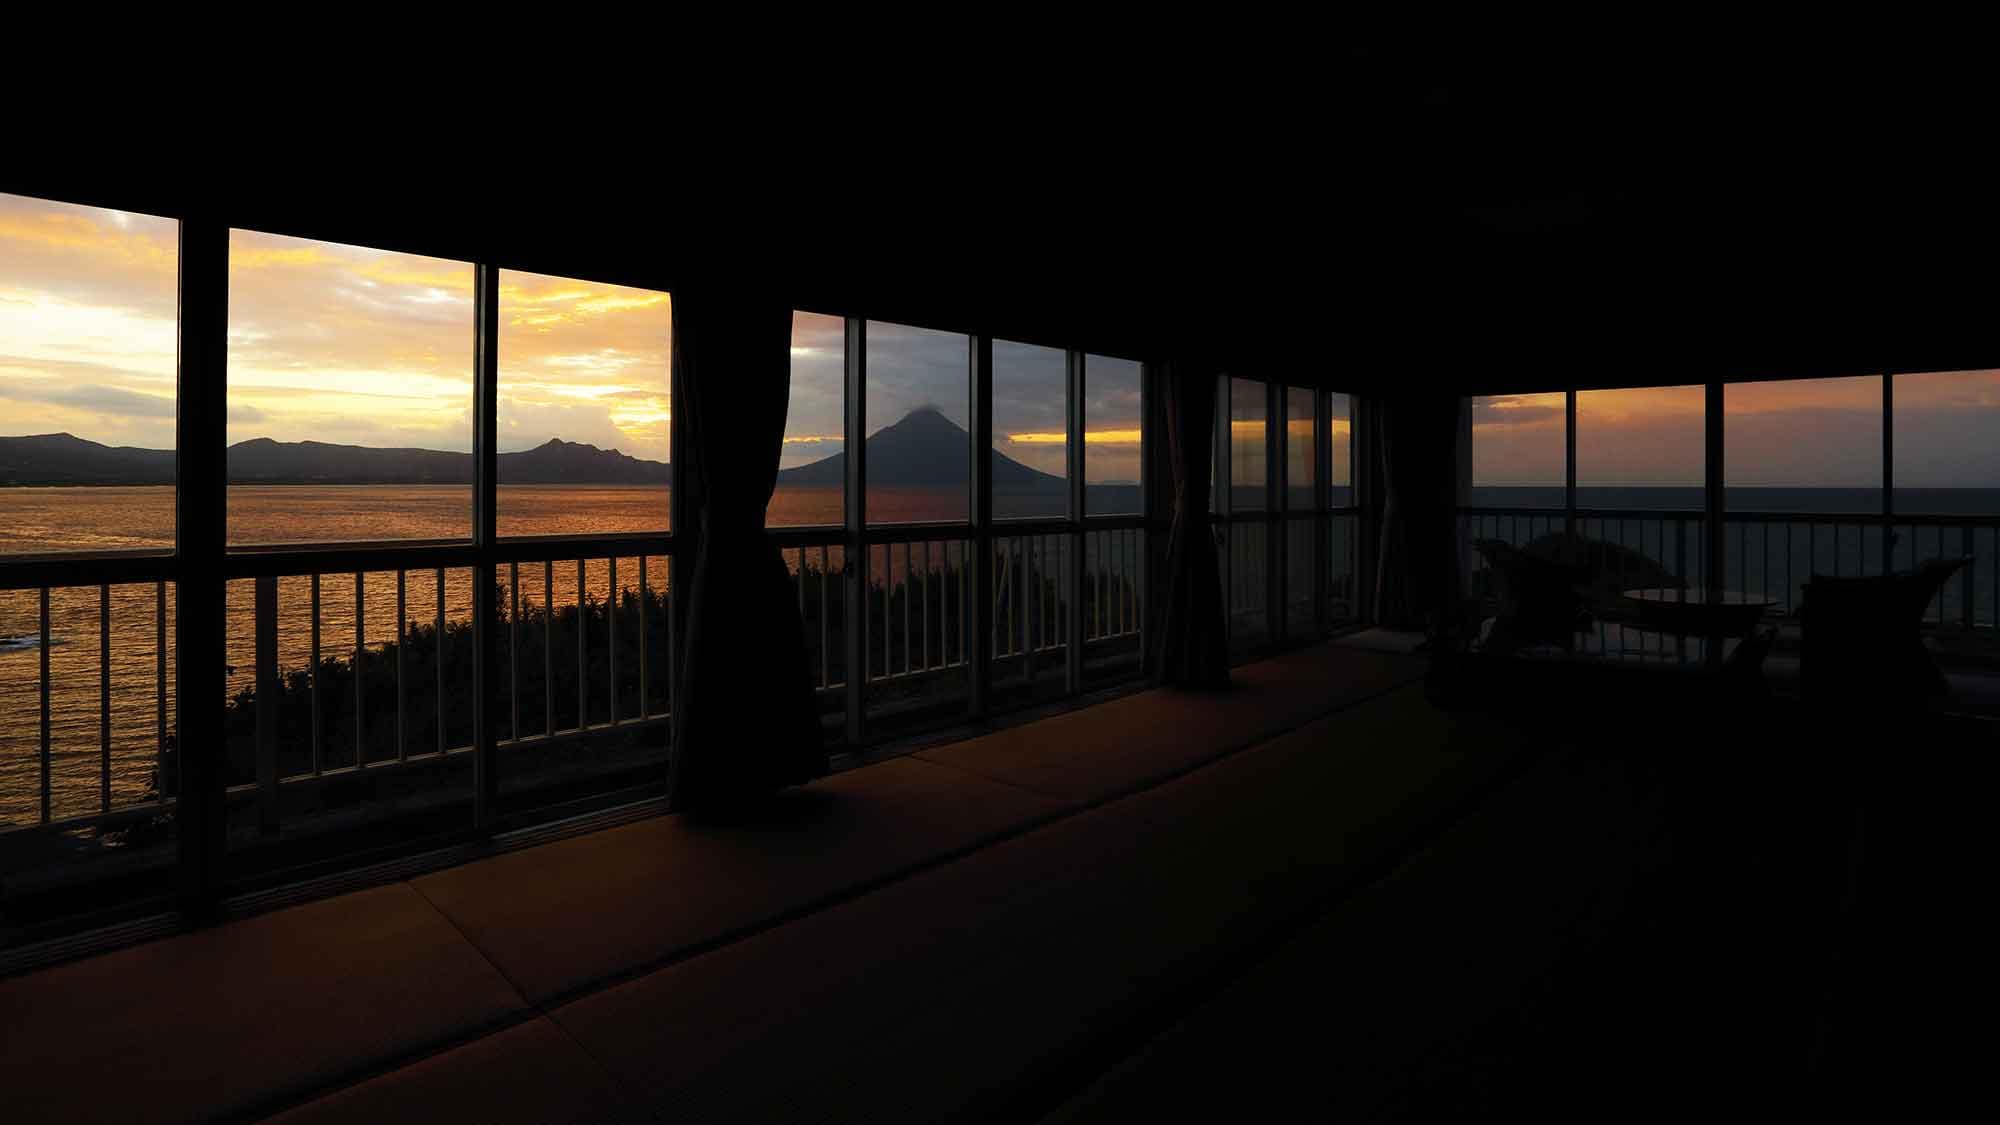 ・[ตัวอย่างห้องสไตล์ญี่ปุ่น 16 เสื่อทาทามิ] คุณสามารถชมพระอาทิตย์ขึ้นที่สวยงามในวันที่แดดจ้า